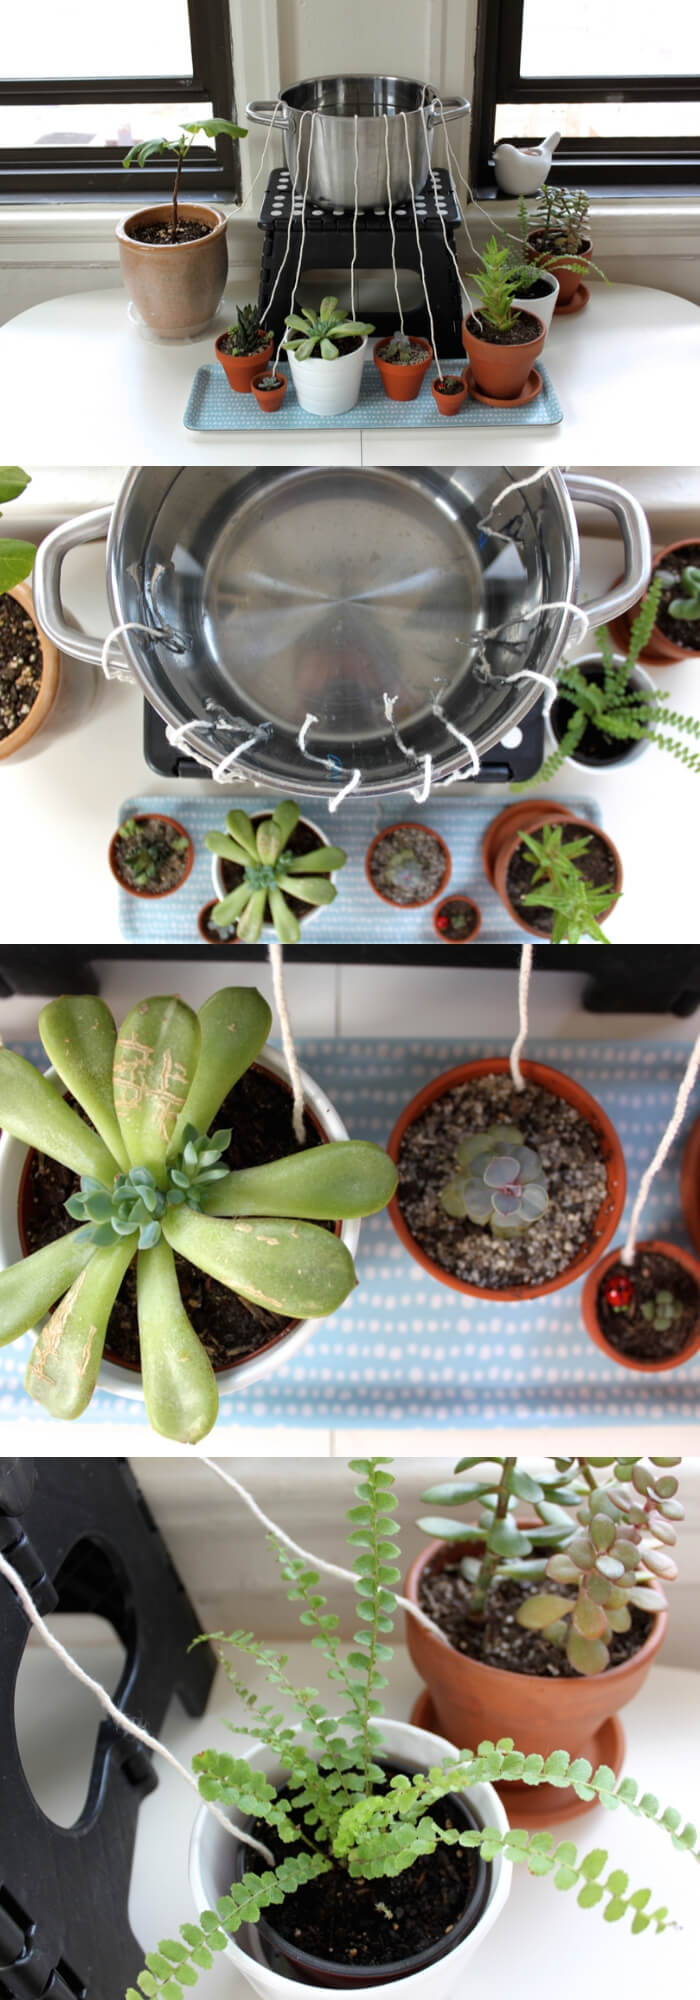 Self-watering for houseplants | Best DIY Self-Watering System Ideas